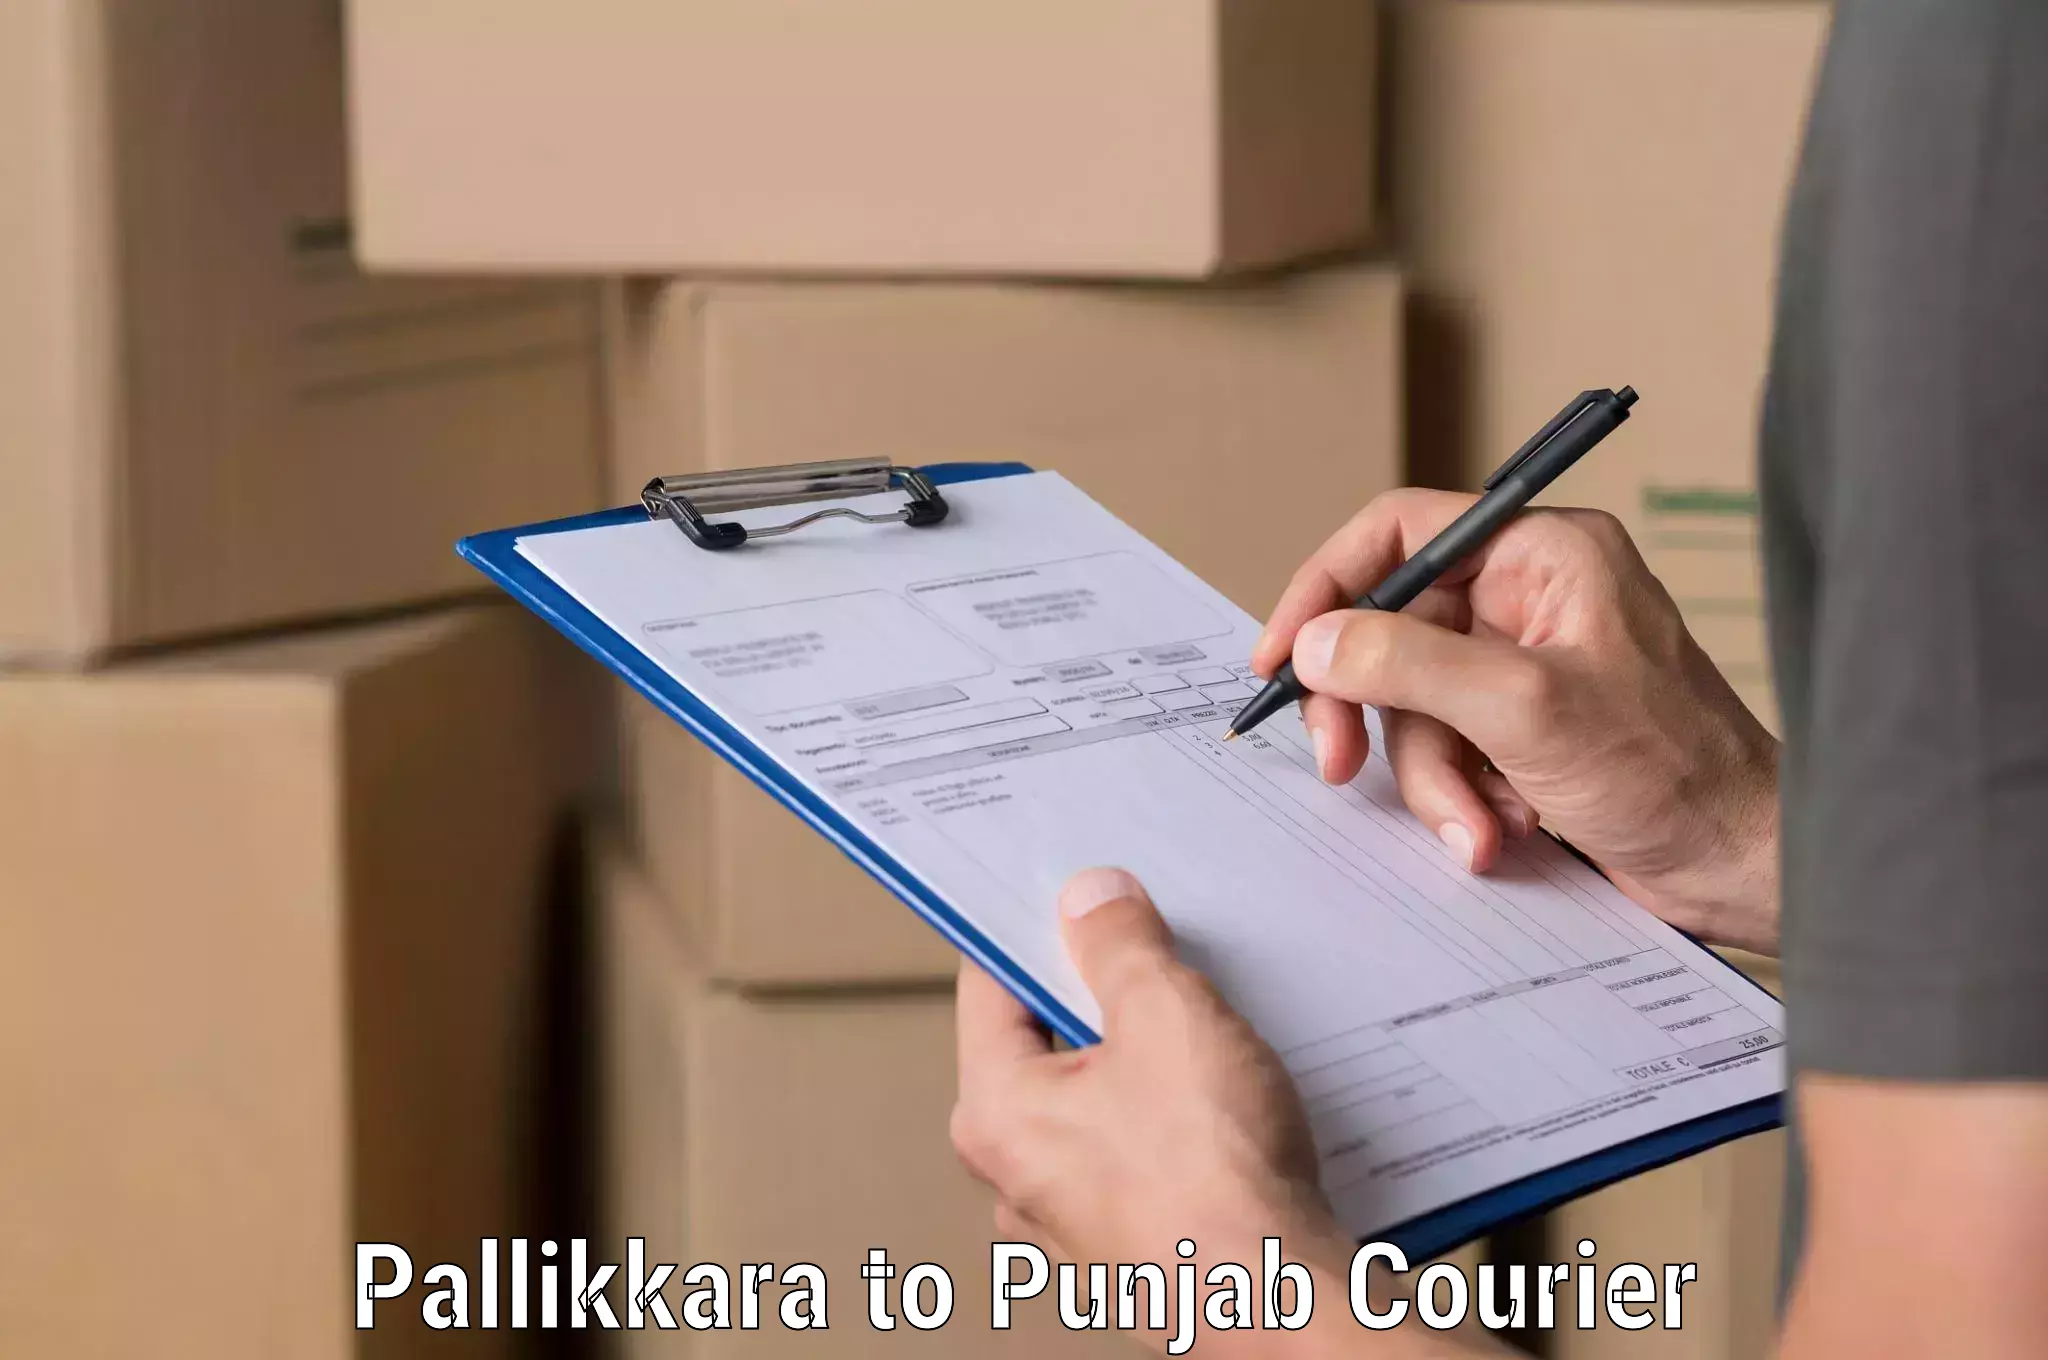 Global shipping networks Pallikkara to Dhilwan